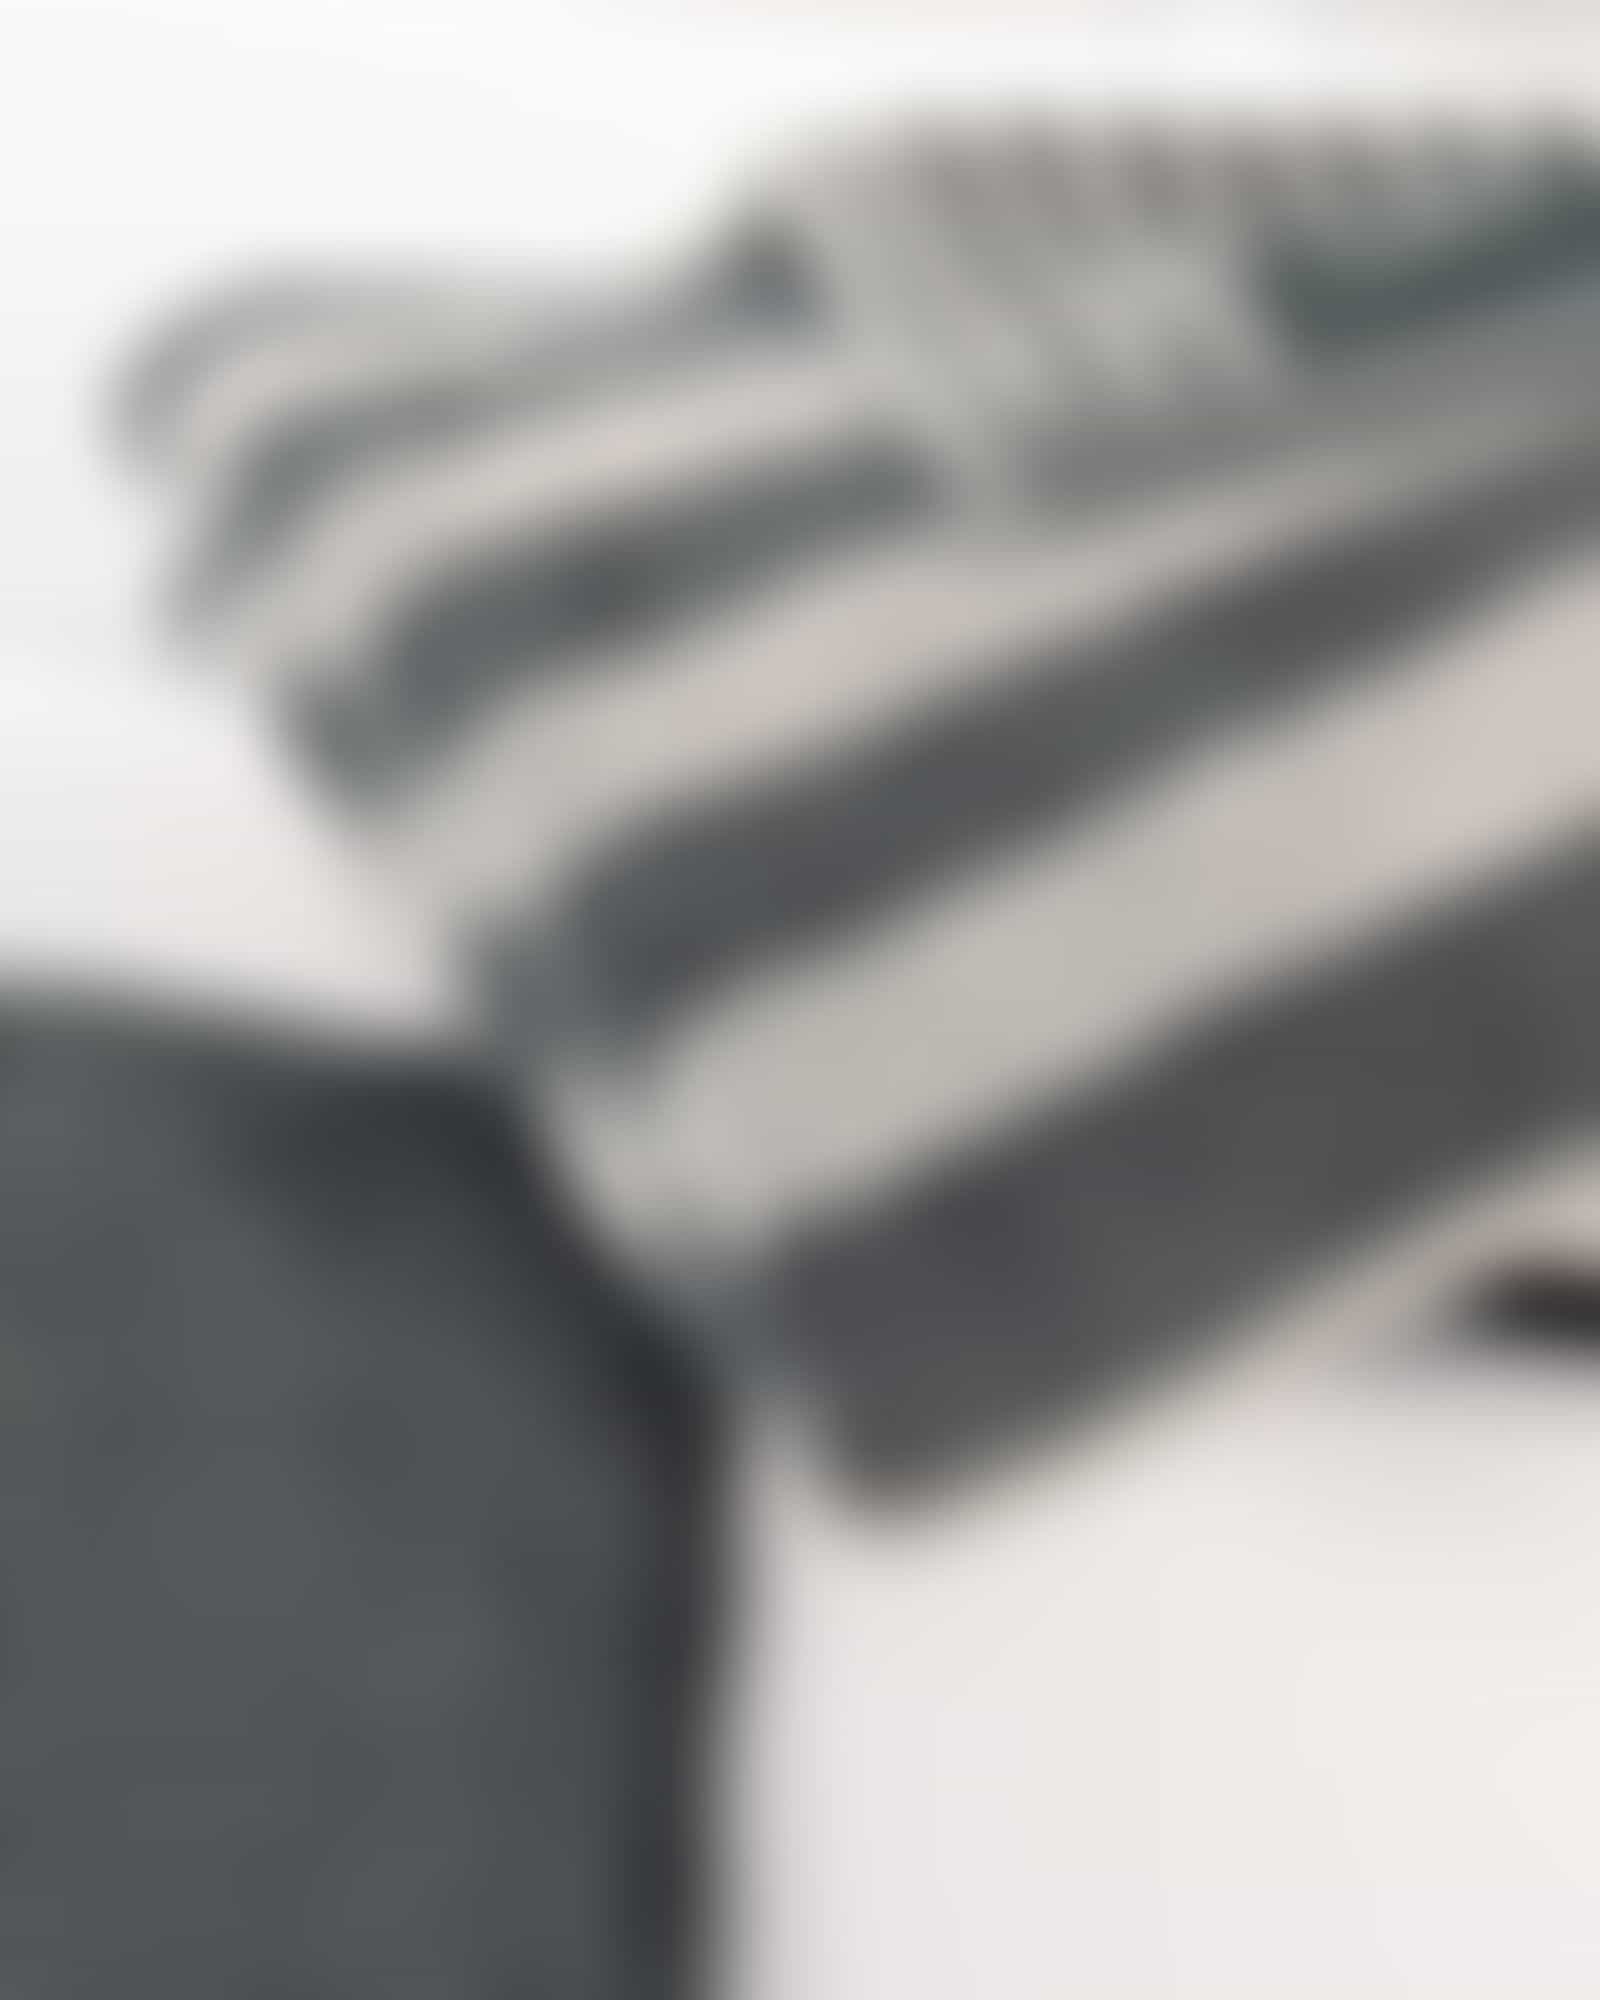 Cawö Handtücher Reverse Wendestreifen 6200 - Farbe: anthrazit - 77 - Waschhandschuh 16x22 cm